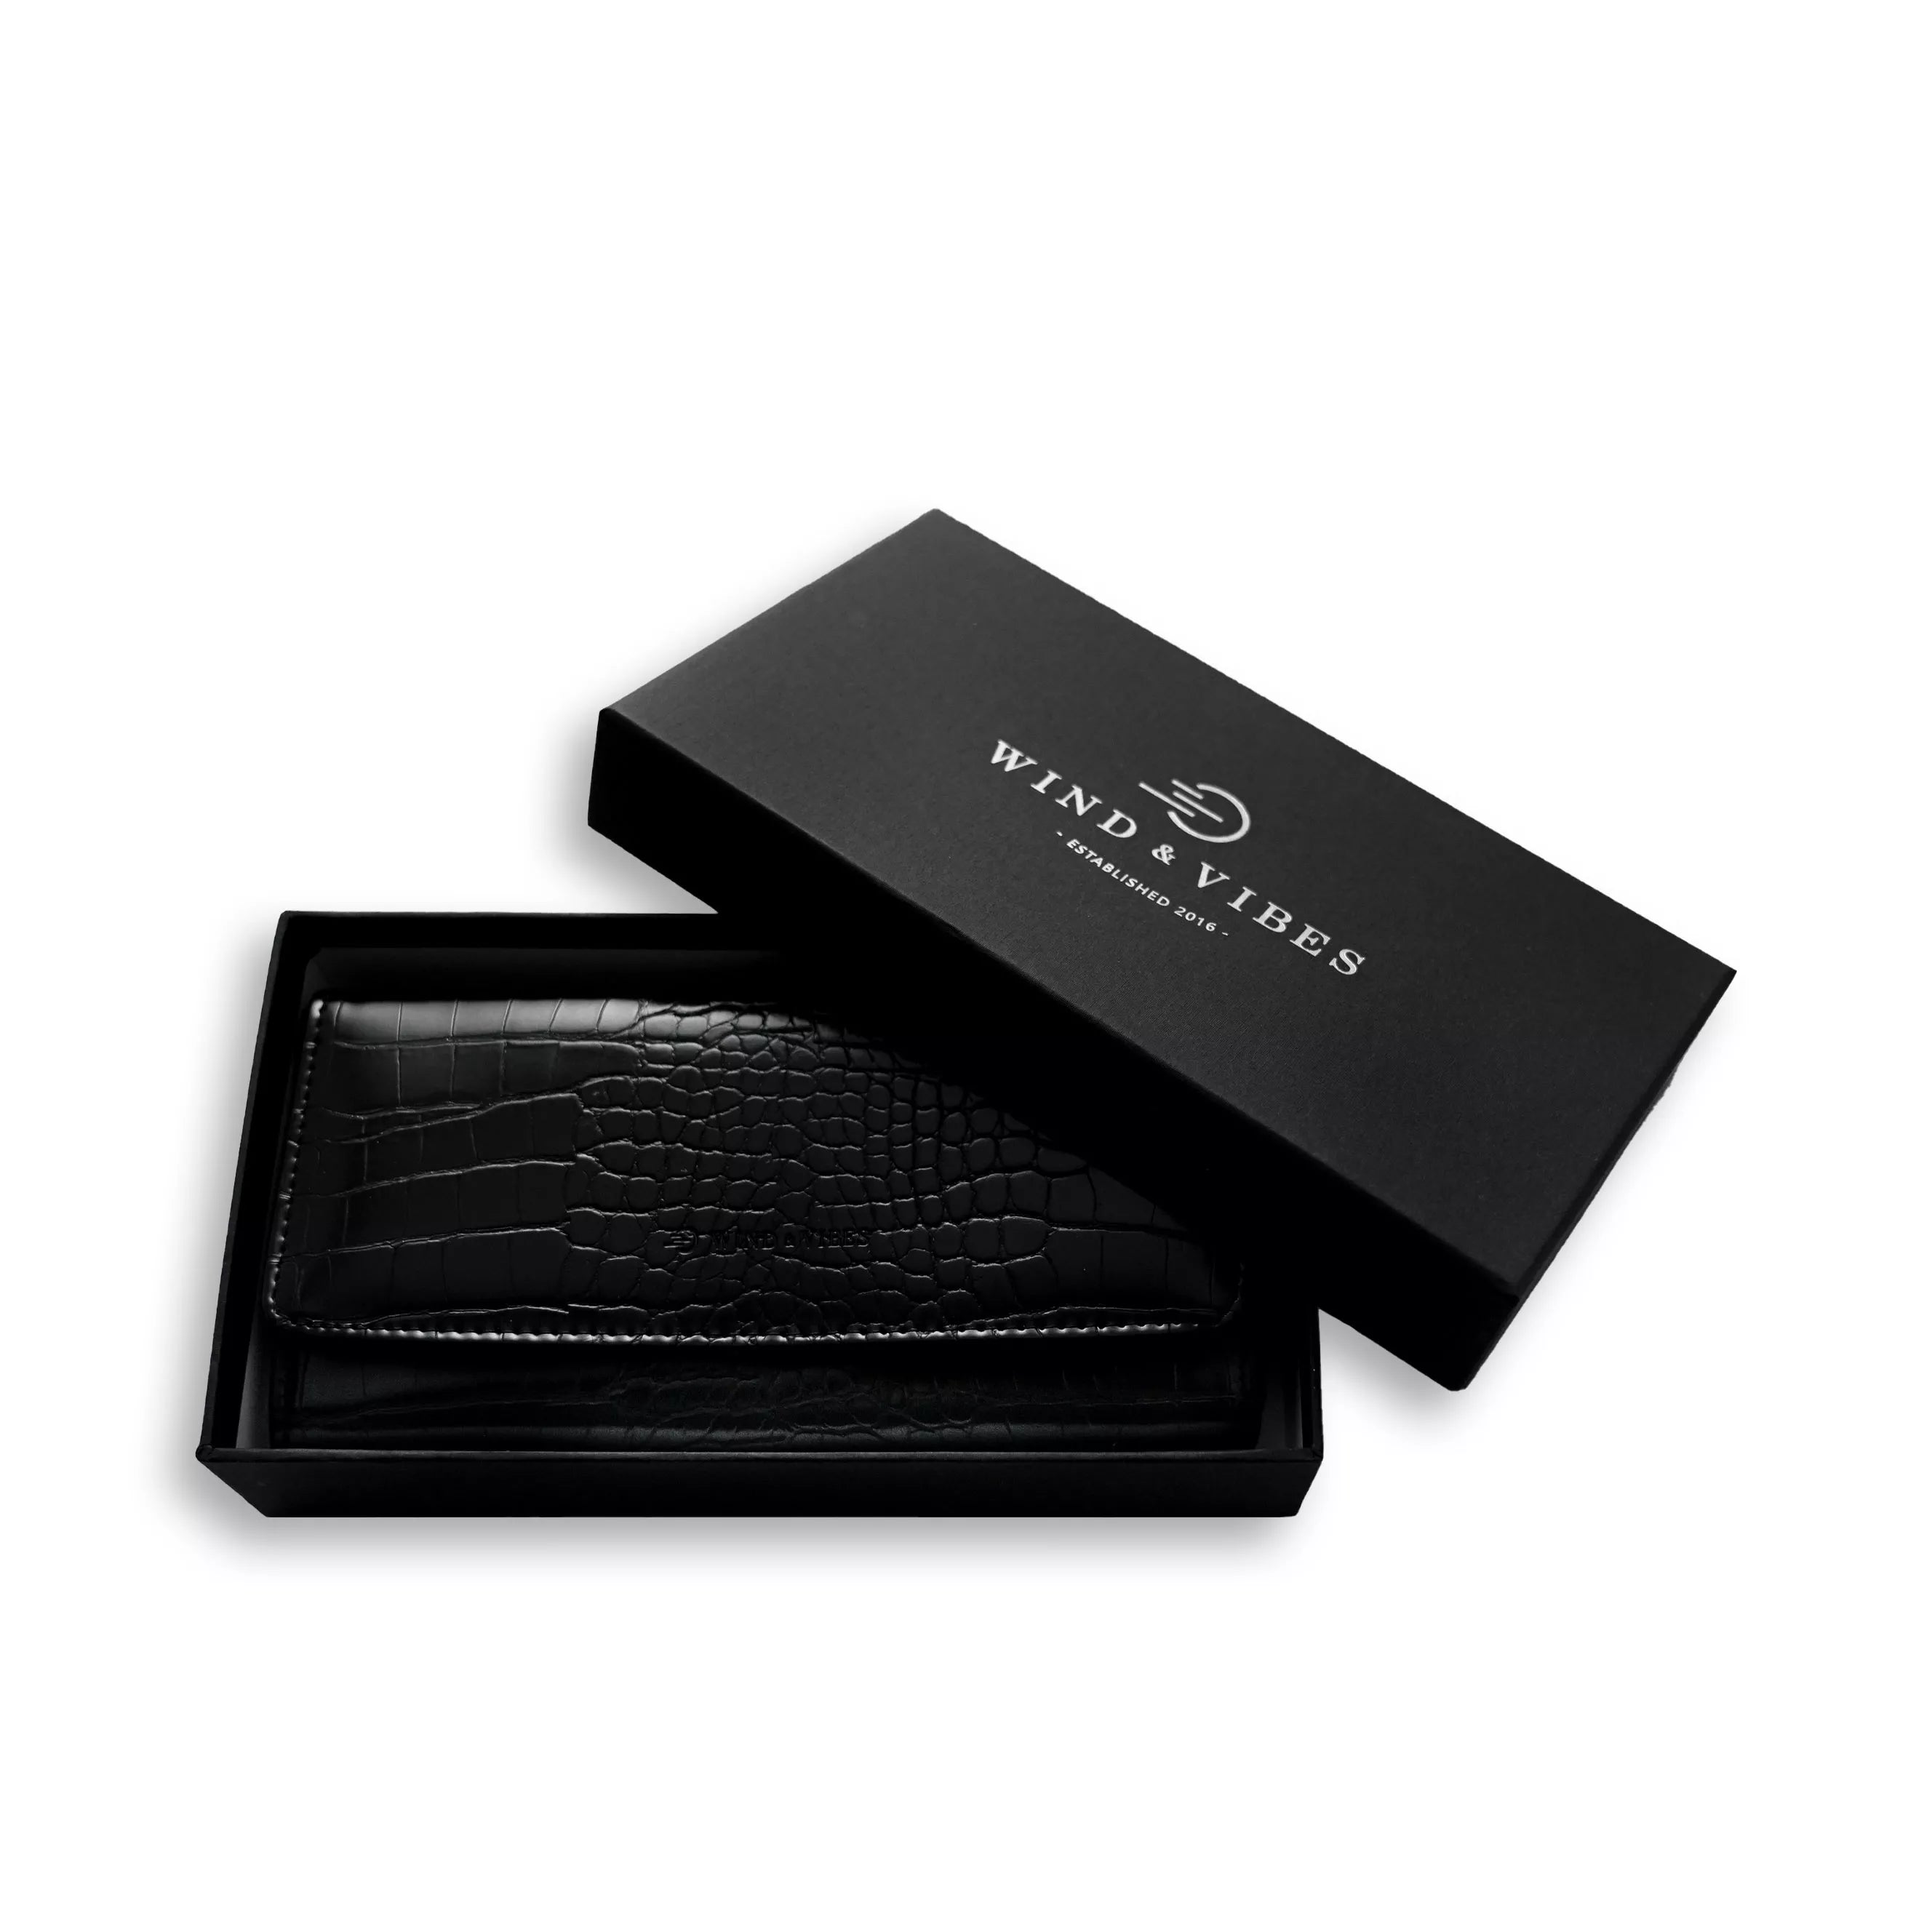 Wallet Croco Black M